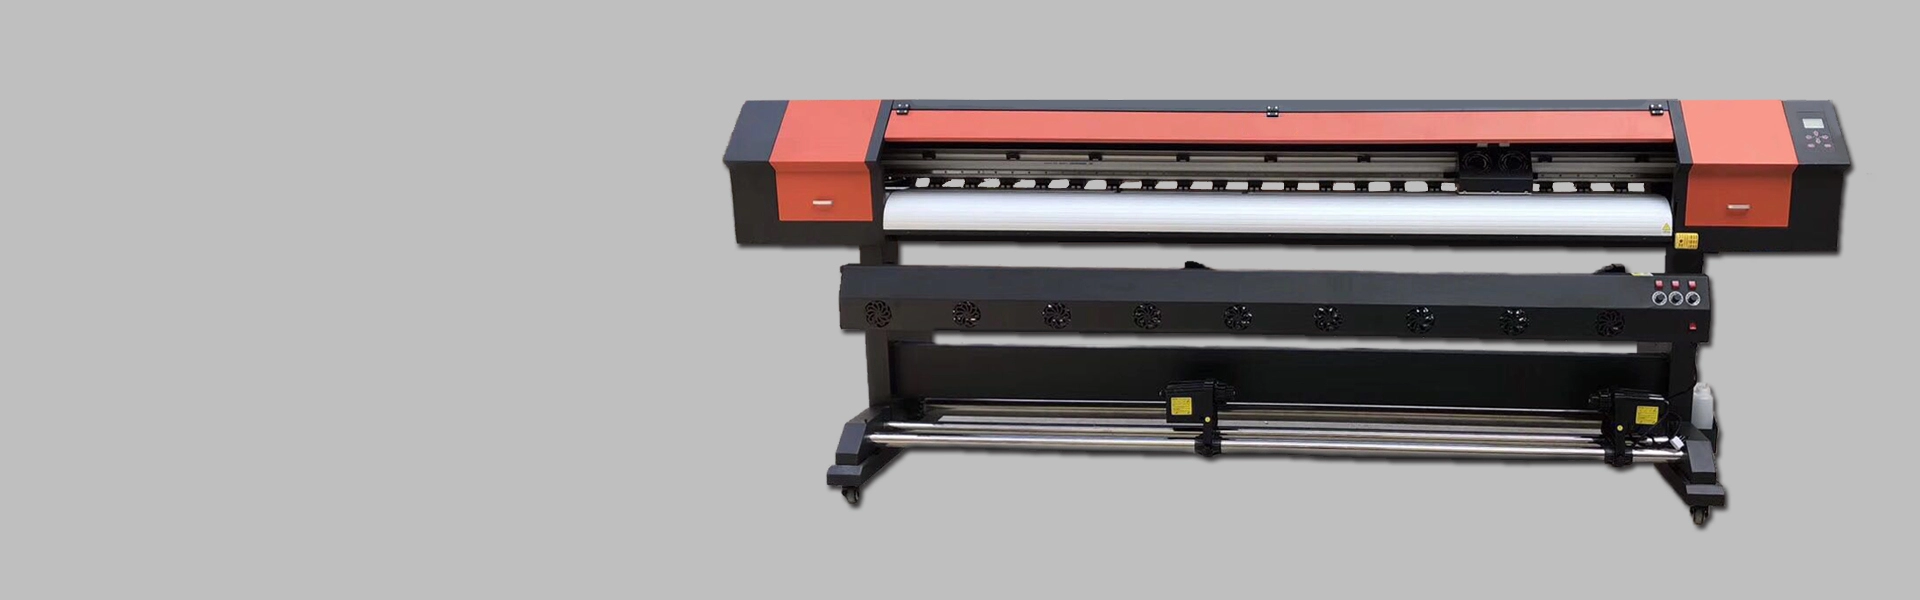 2,5-метровый принтер XP600